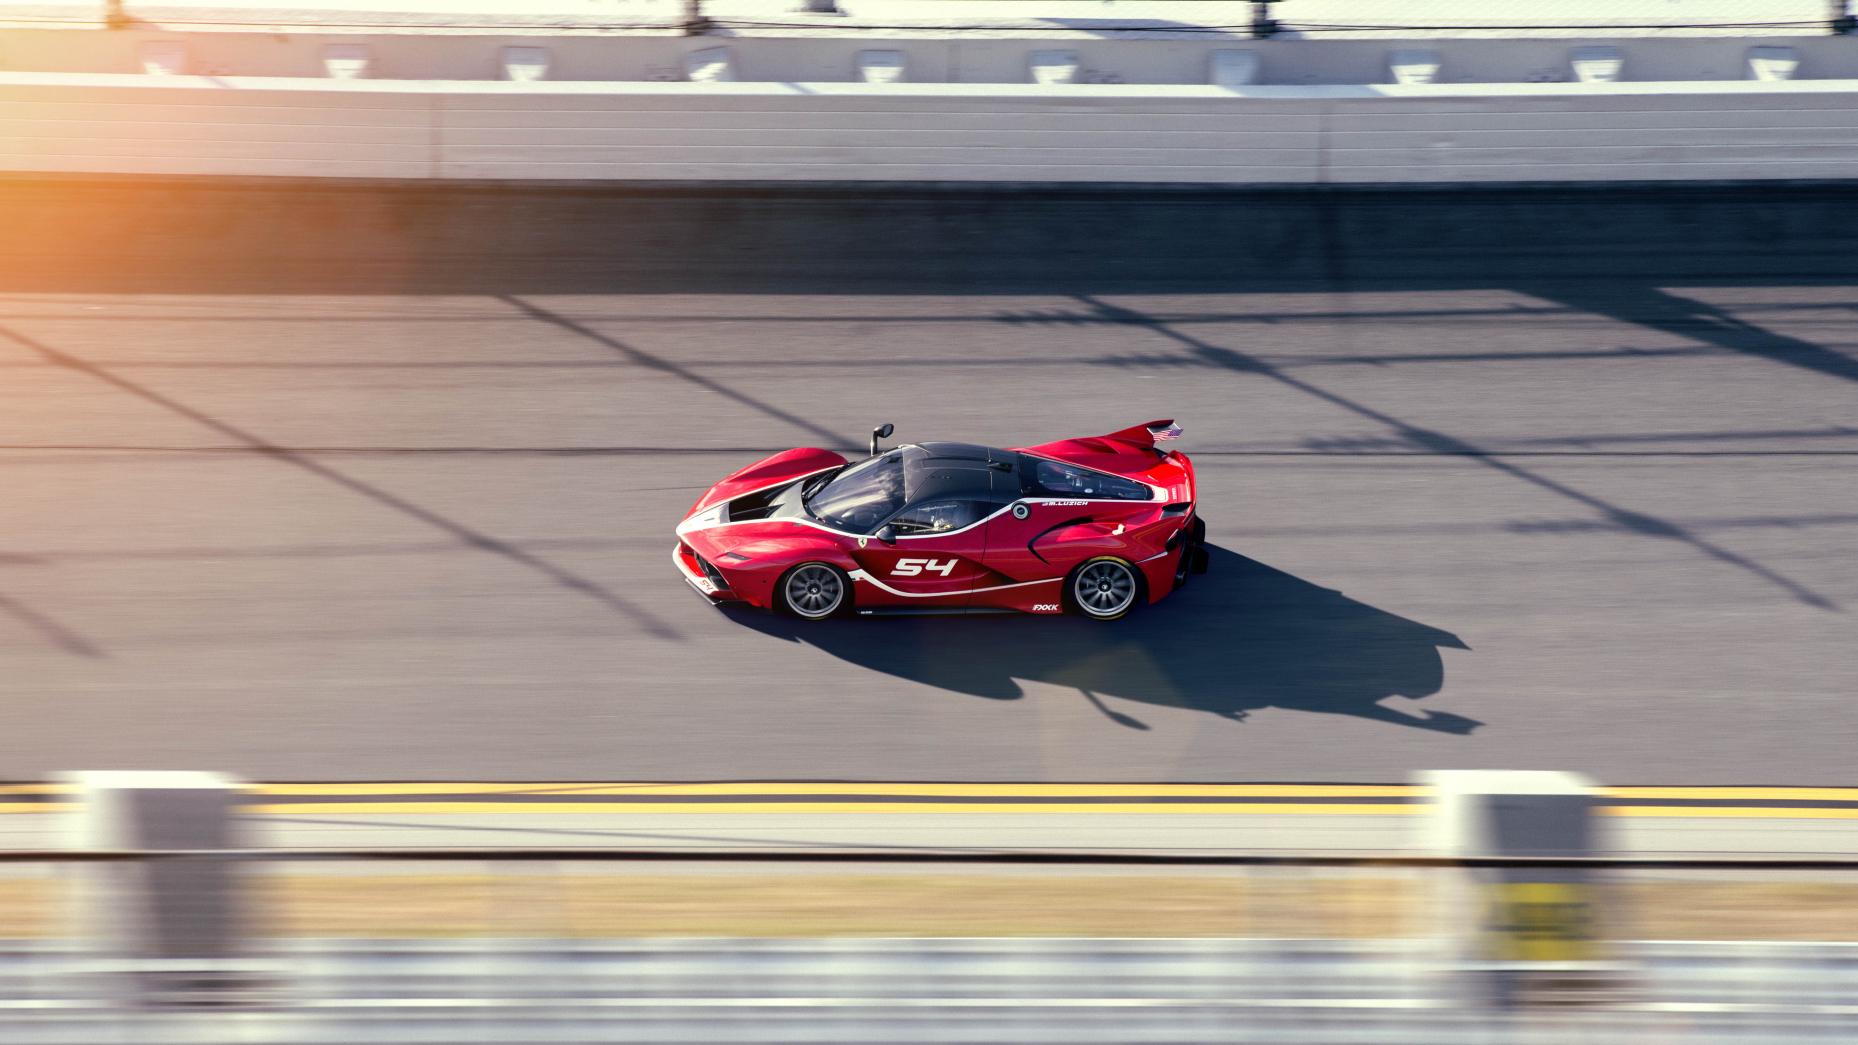 8. Ferrari FXXK